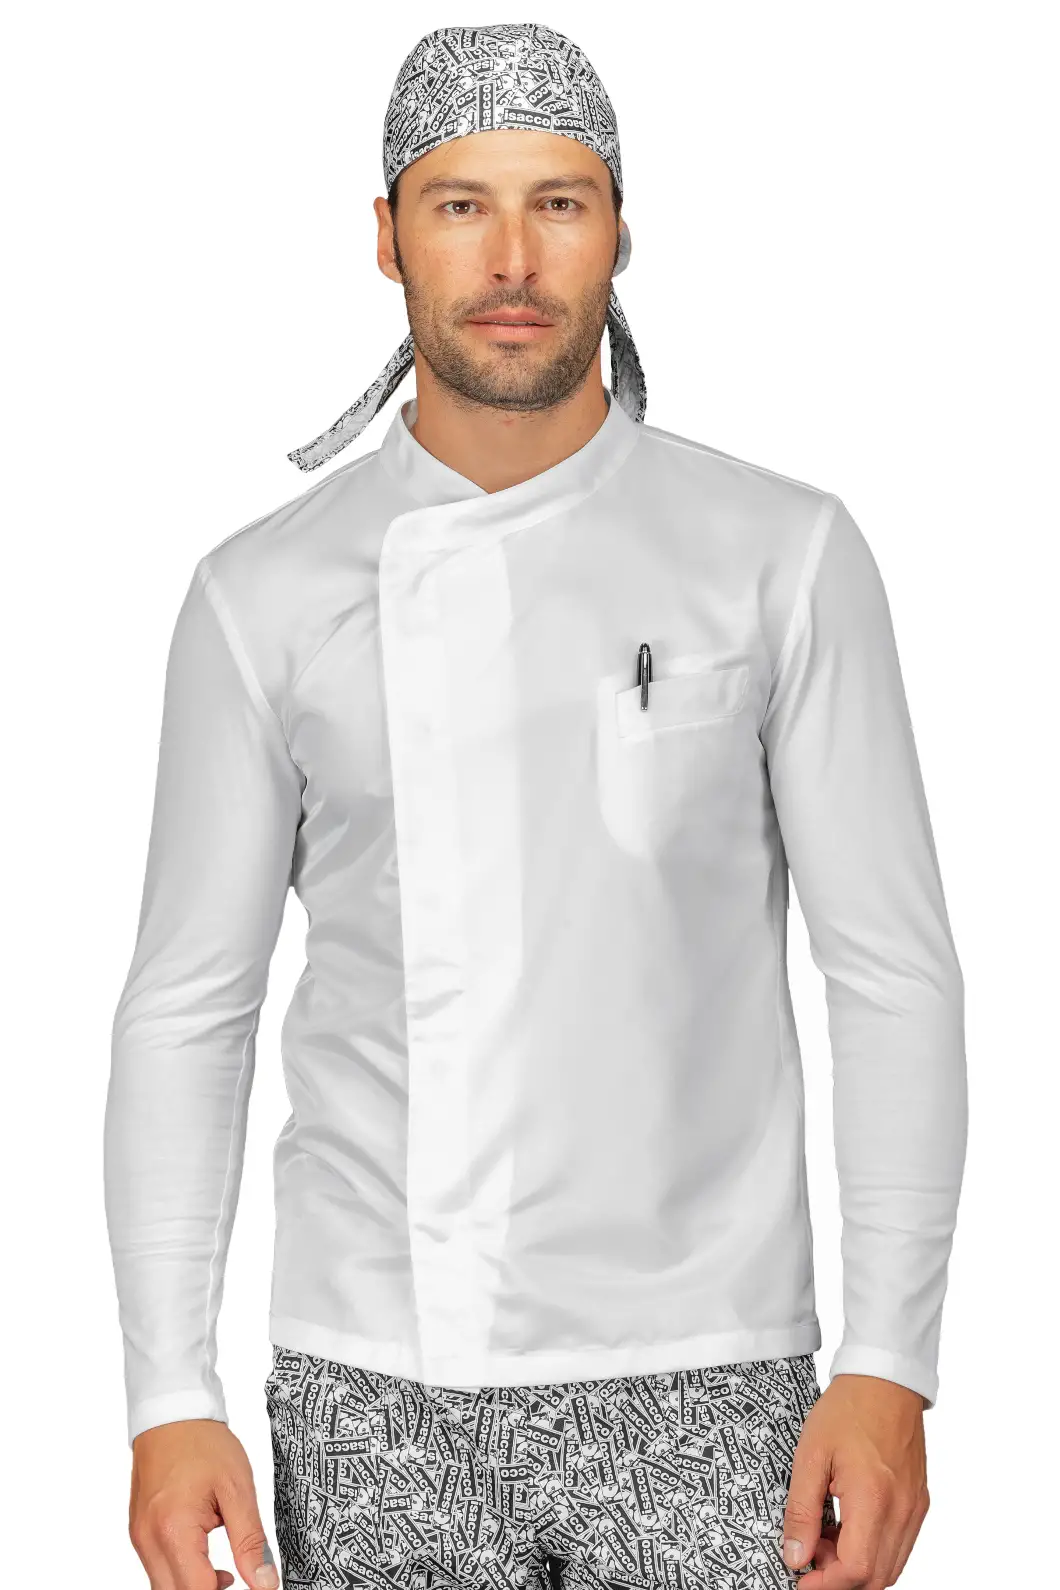 Camicia ISACCO Uomo da Cucina in Poliestere e Jersey Bianca Personalizzata